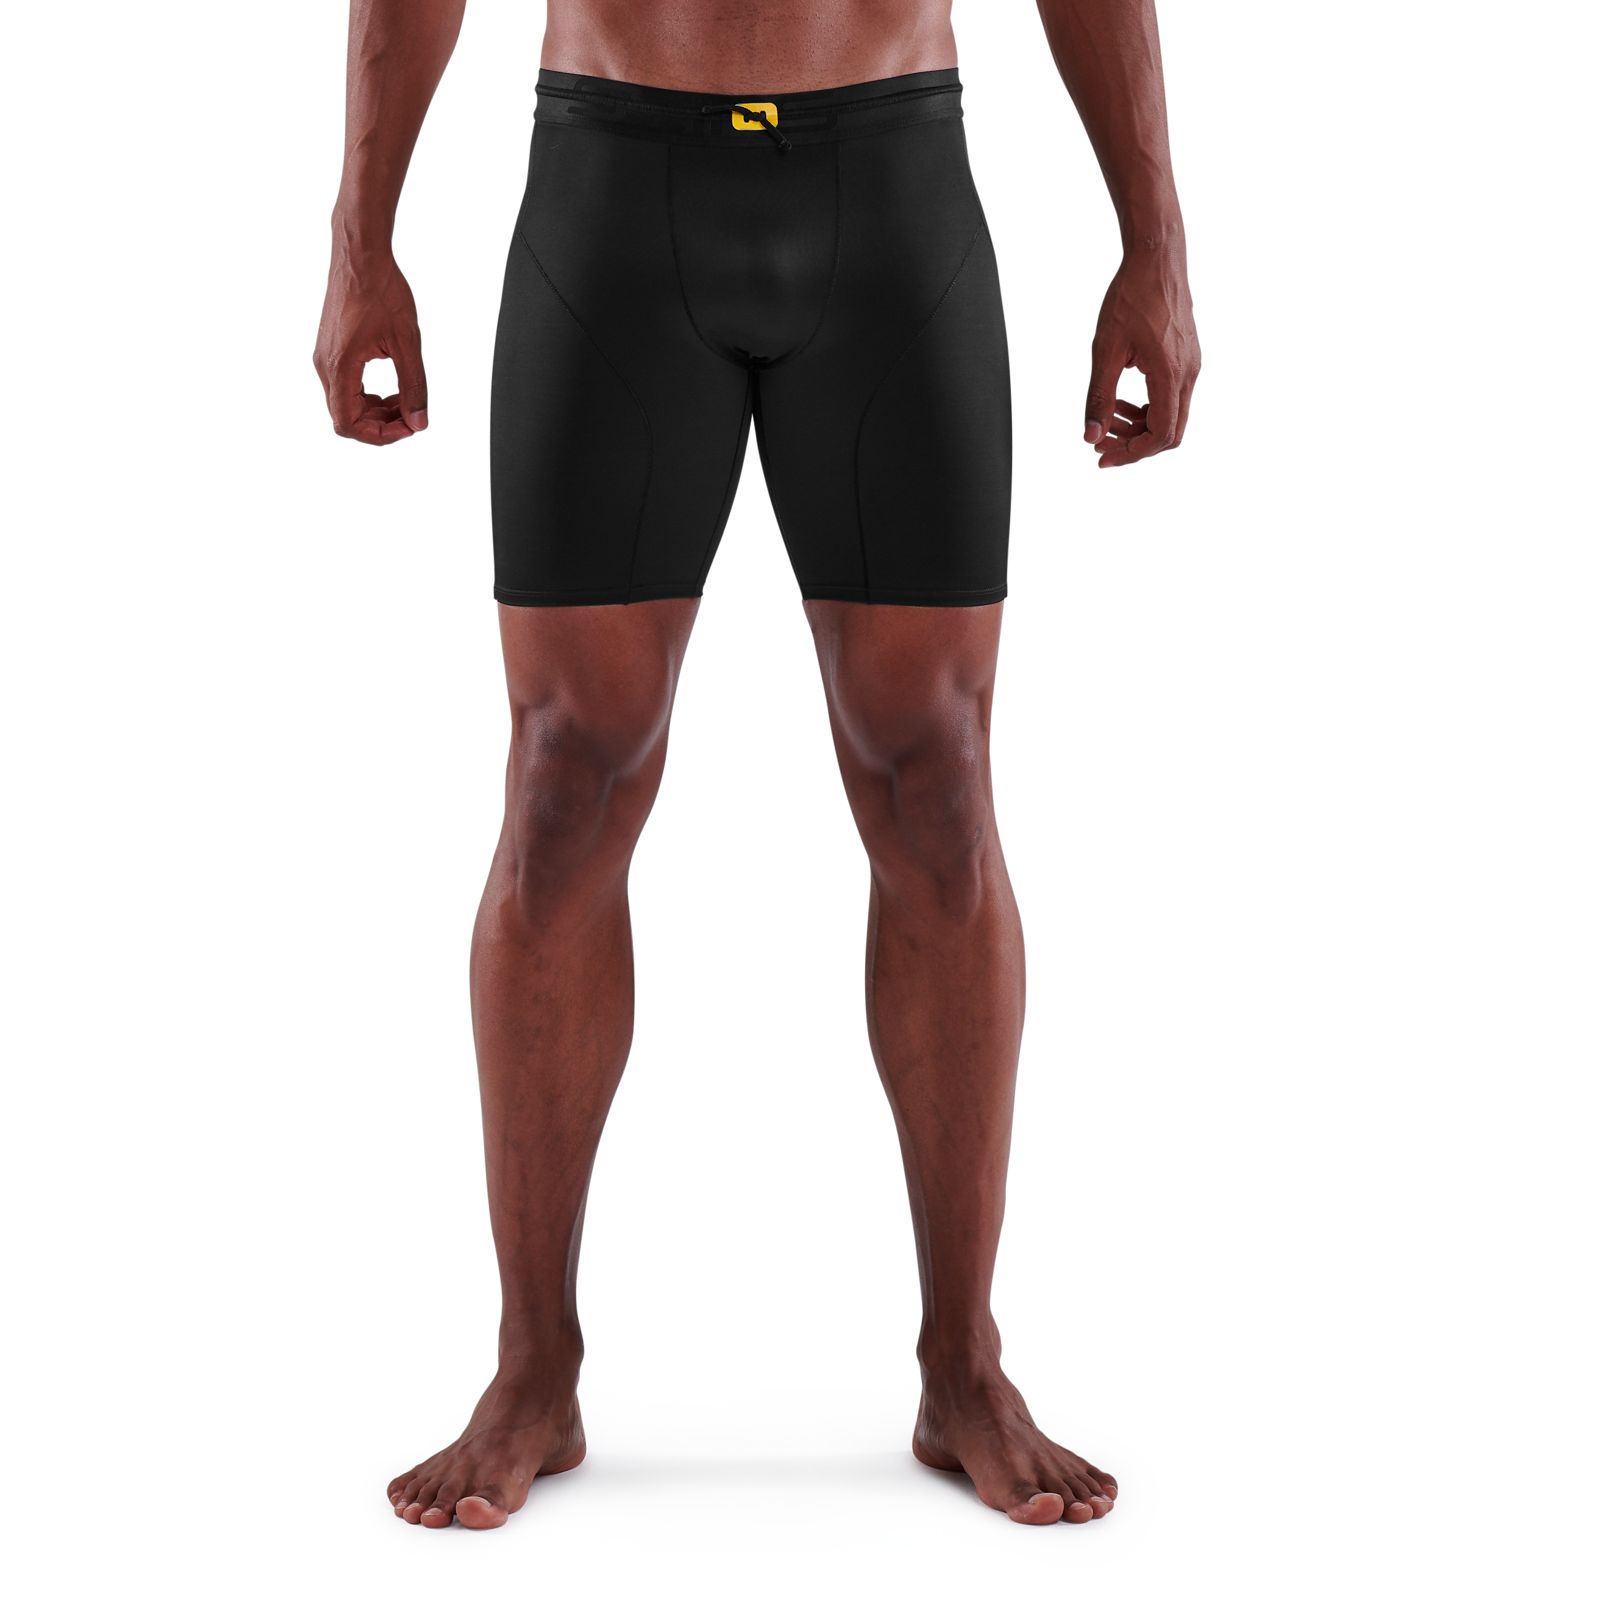 SKINS Skins DNAMIC ACE - Tights - Men's - black/red - Private Sport Shop